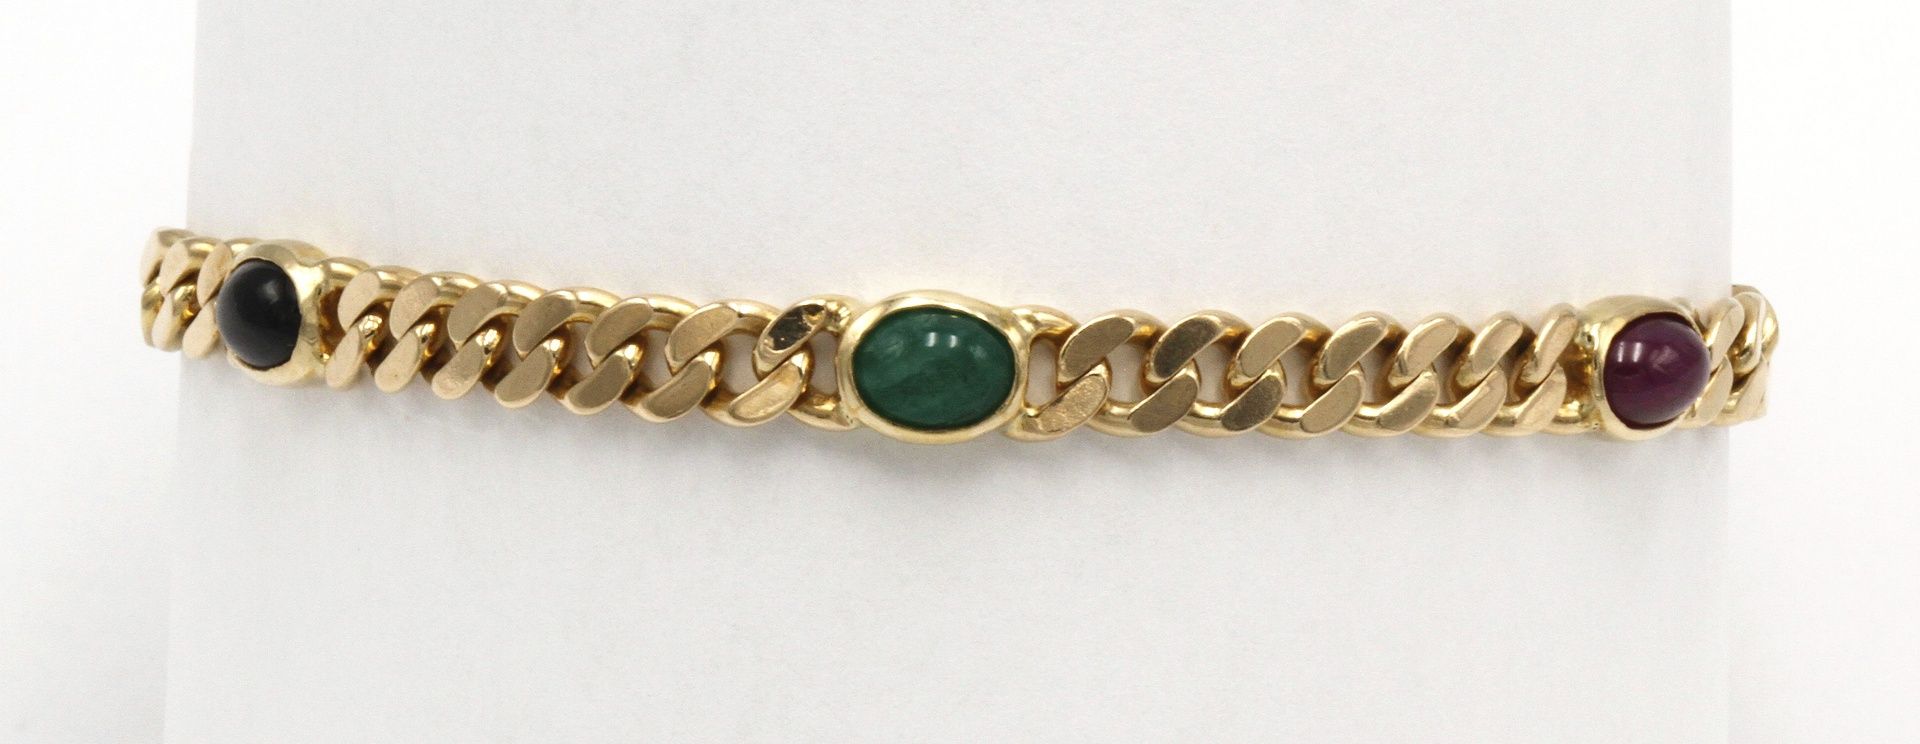 Armband mit Saphir, Rubin und Smaragd585/- Gelbgold, zwei ca. 1,3 ct Saphire, zwei ca. 1,3 ct - Image 4 of 4